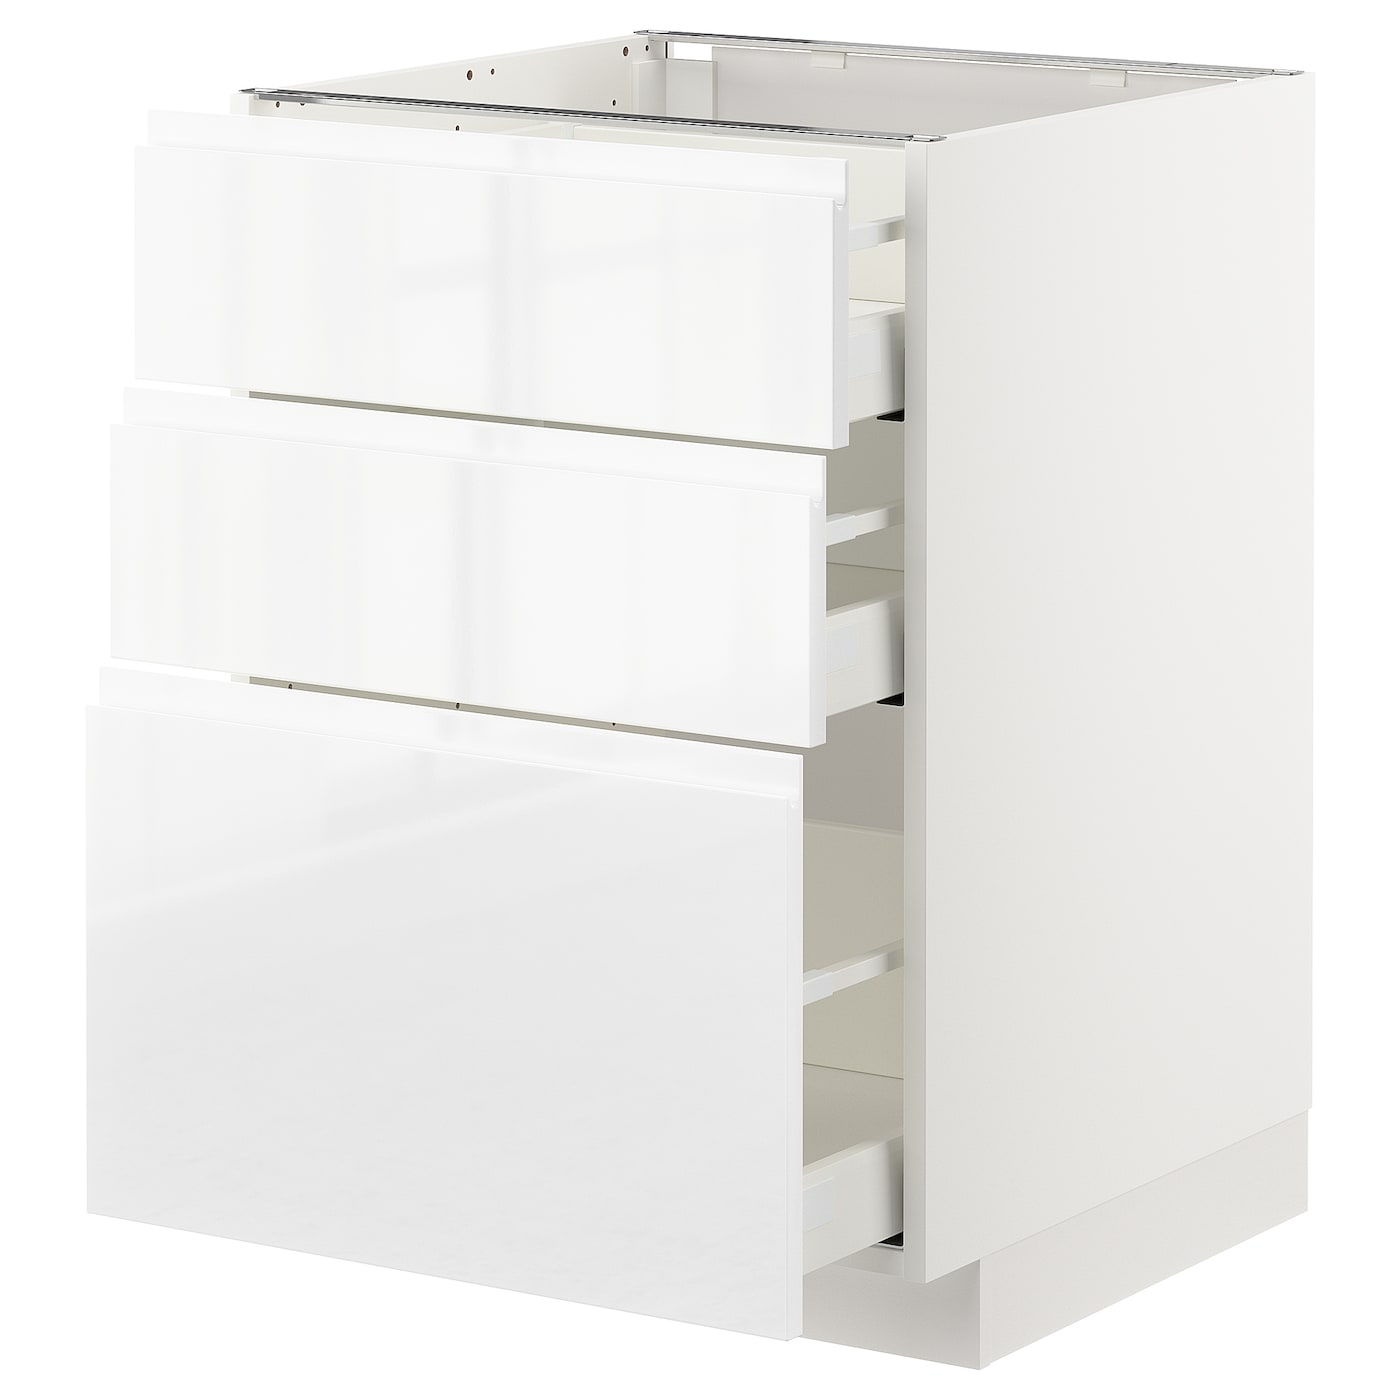 Напольный кухонный шкаф  - IKEA METOD MAXIMERA, 88x62x60см, белый, МЕТОД МАКСИМЕРА ИКЕА